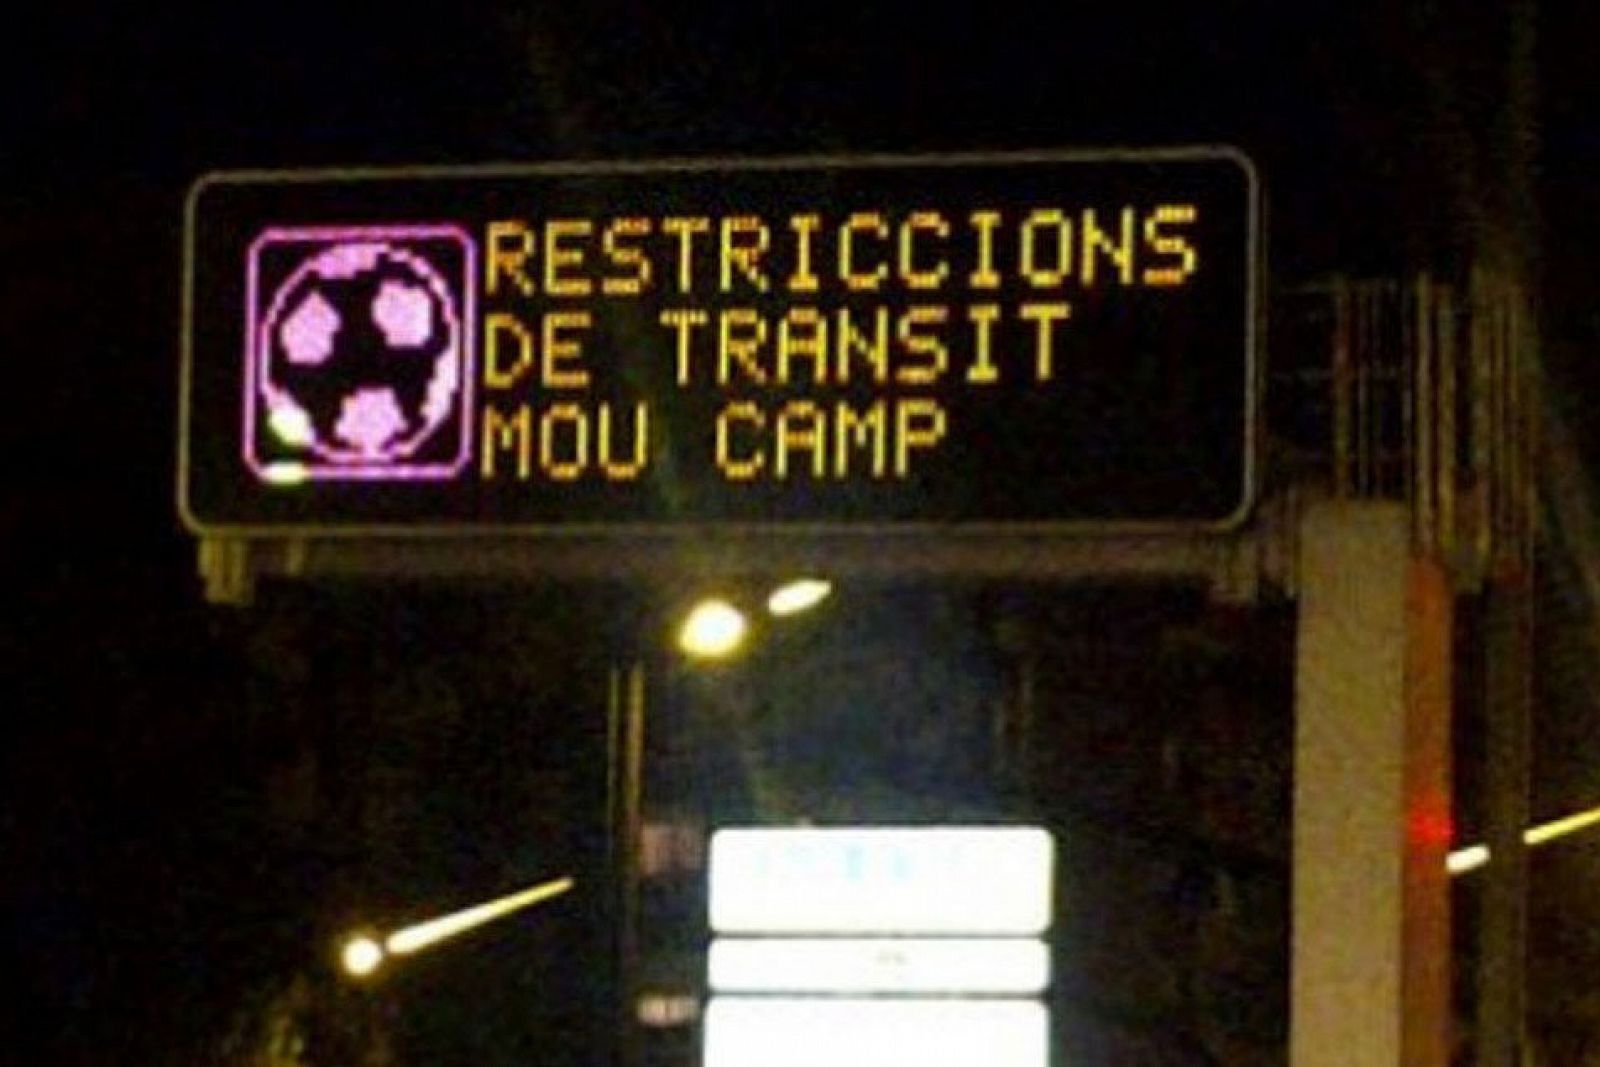 Imagen del cartel luminoso que avisaba sobre las restricciones del tránsito al Mou Camp.